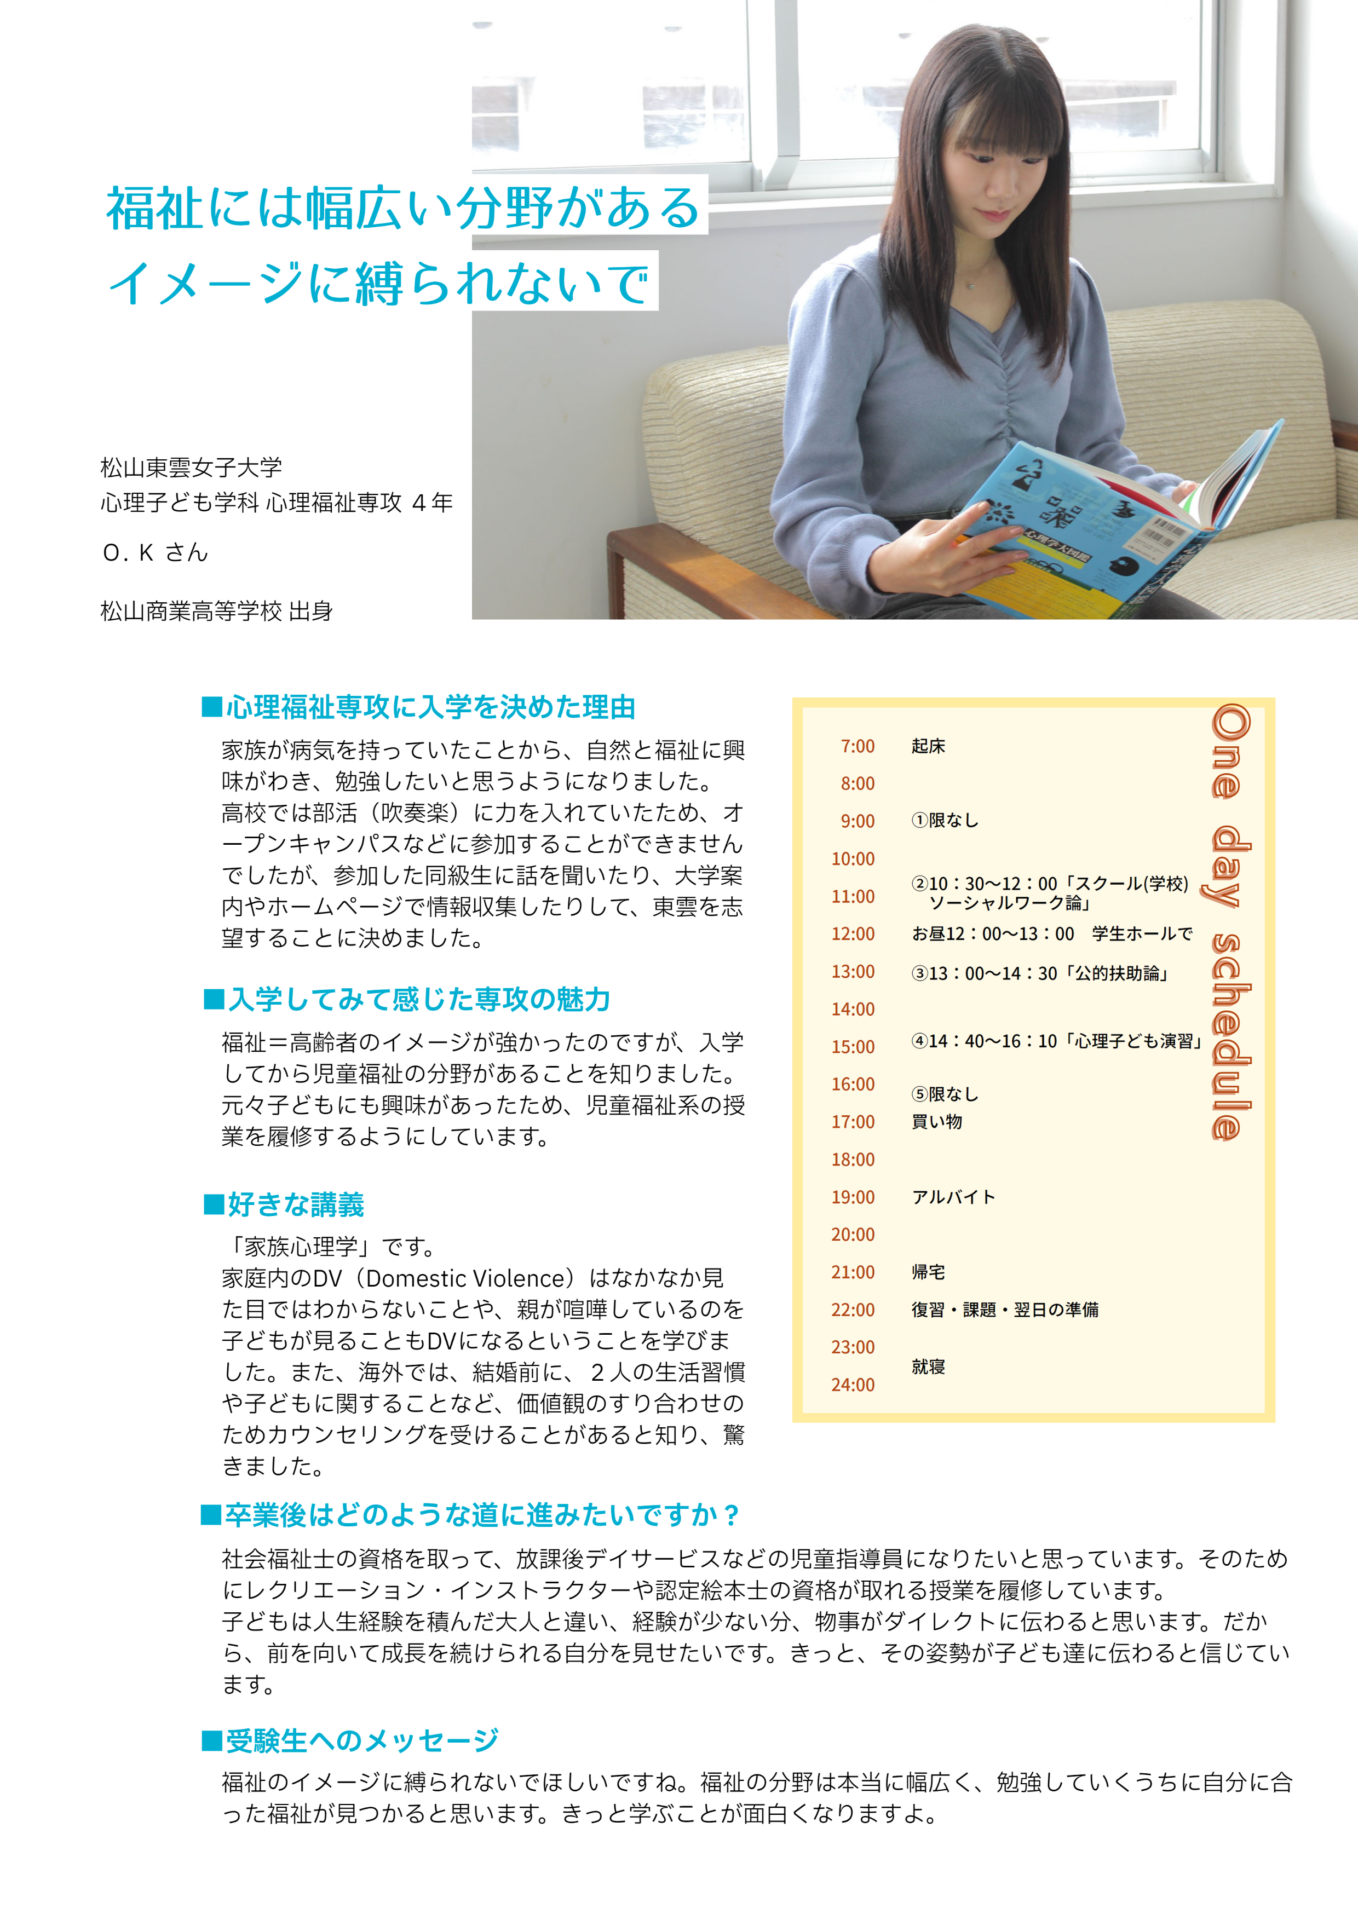 松山 東雲 女子 大学 学生 用 ホームページ